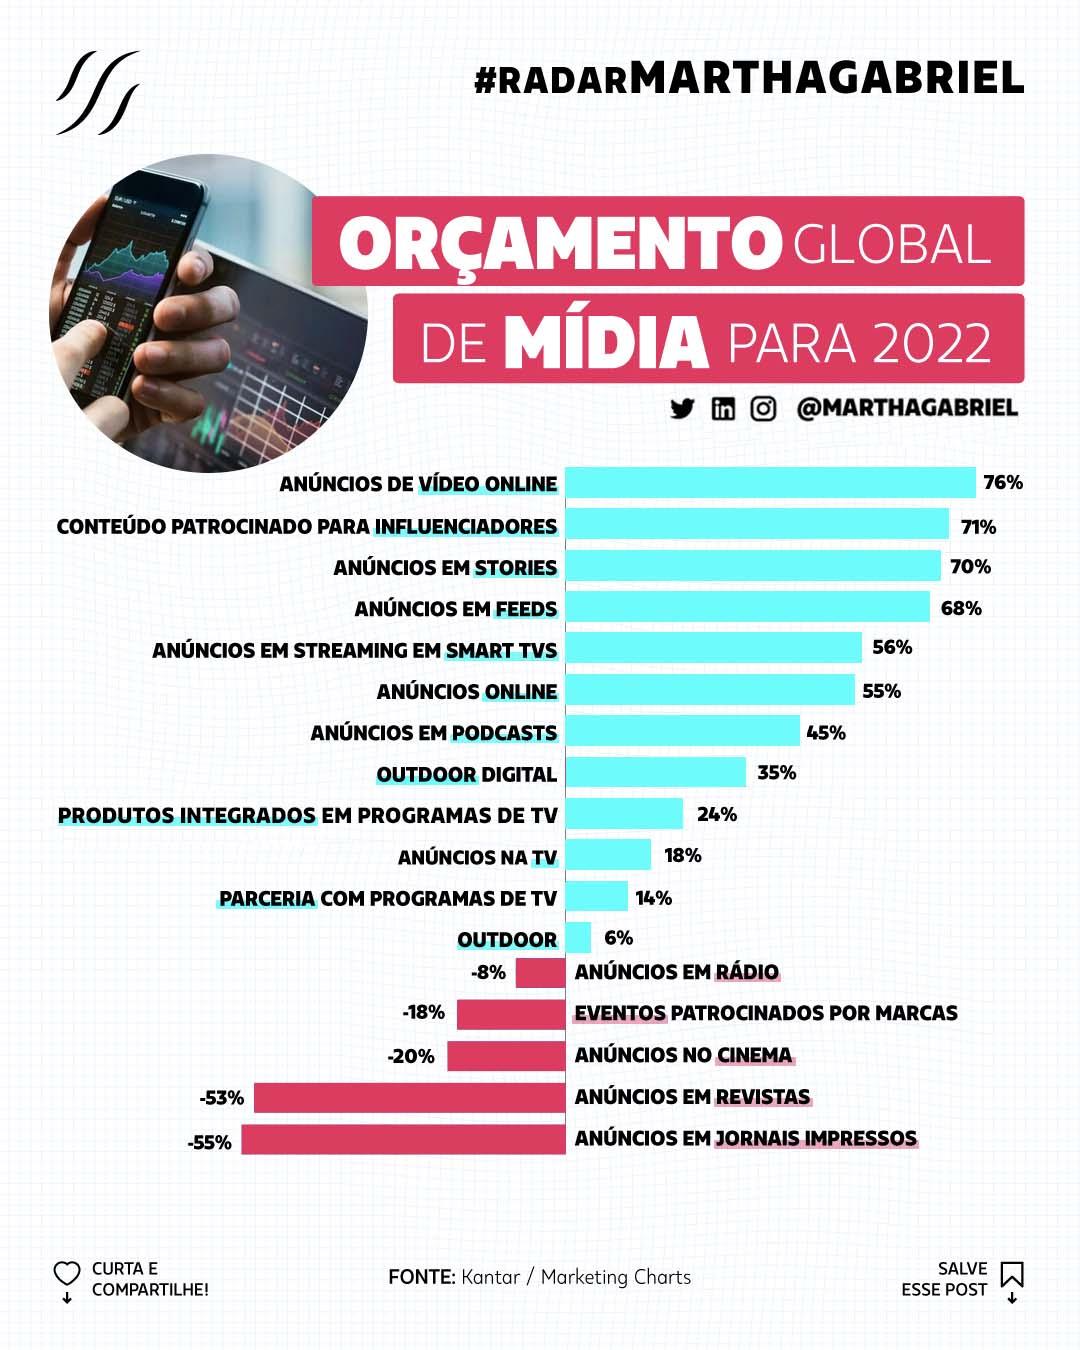 Orçamento global de mídia para 2022